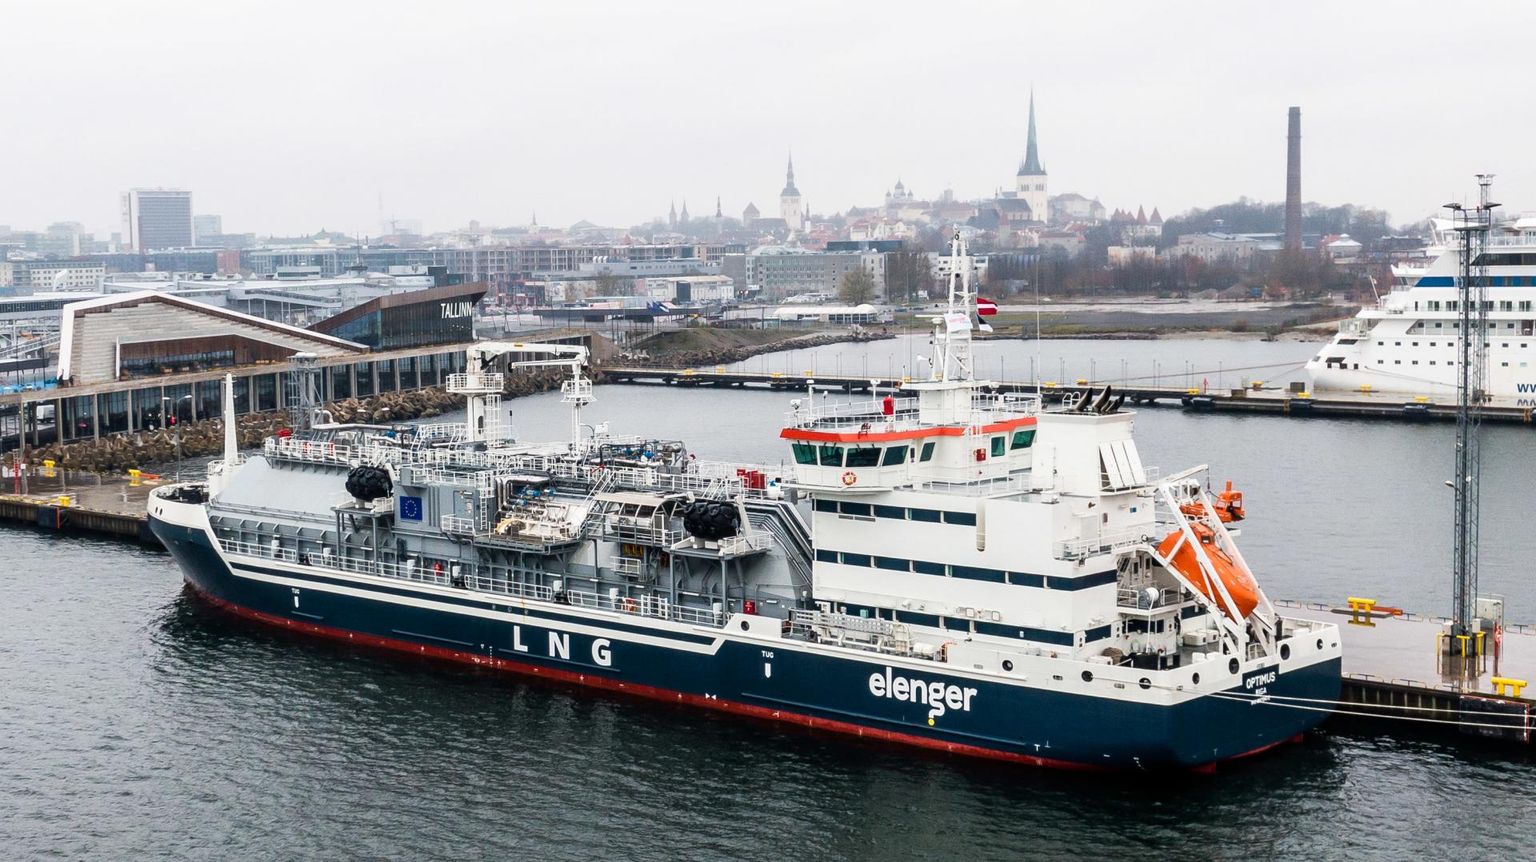 Meremajanduse asekantsleri Kaupo Lääneranna sõnul LNGst tuleviku rohelise laevakütusena enam ei räägita, kuigi veel alles oli see mainstream. Samas on LNGsse tehtud palju investeeringuid. Pildil Elengeri uue LNG-laeva ristimine Tallinna kruiisisadama terminalis. 